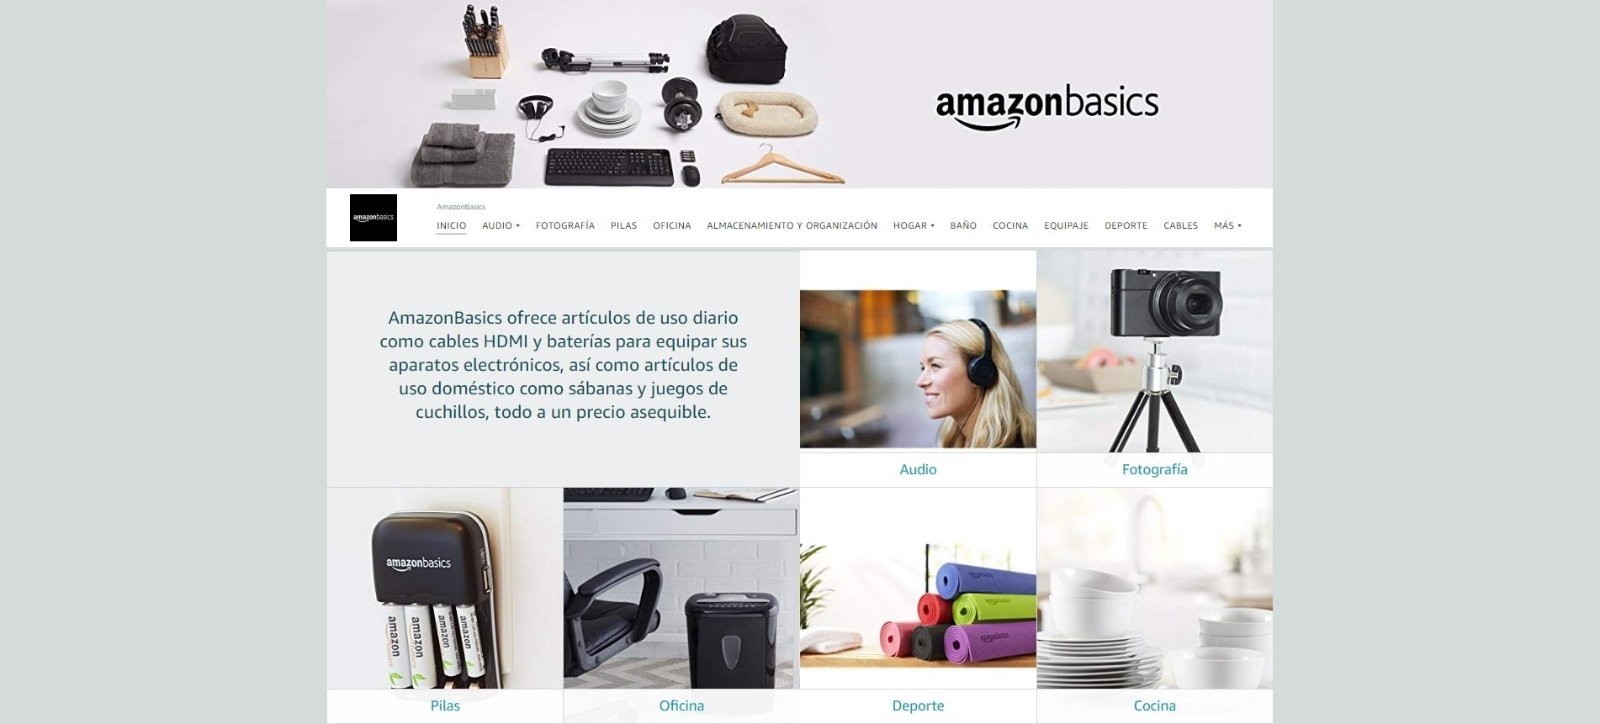 Amazon Basics web